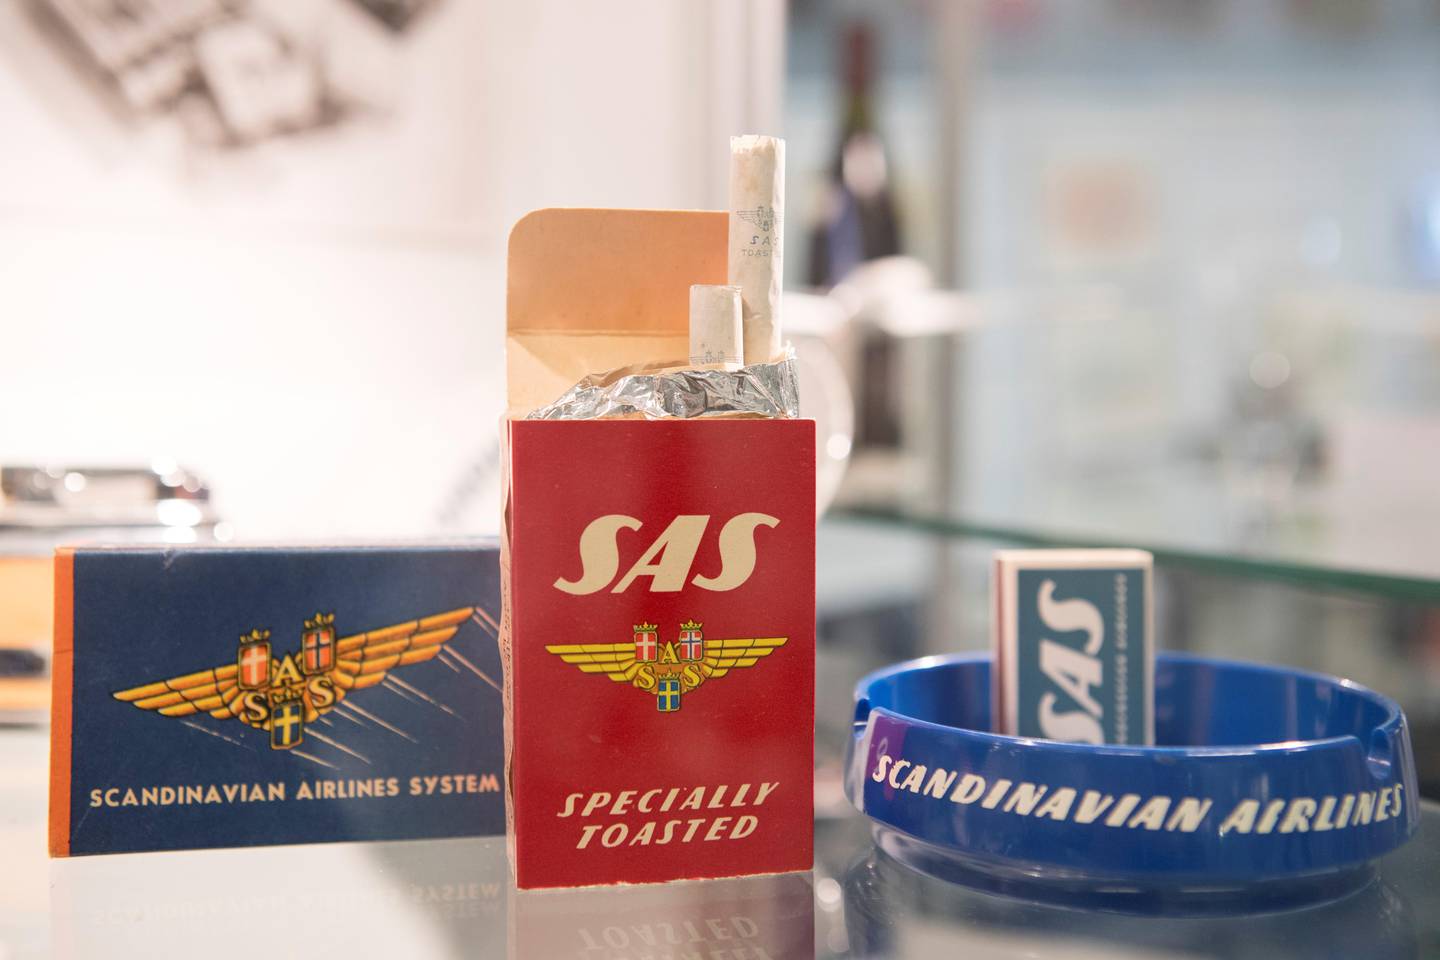 Gardermoen  20160705.
SAS Museet ble først åpnet i 1989 og gir et overblikk over skandinavisk luftfart fra dens spede begynnelse i første halvdel av det forrige århundre og frem til i dag.
Utstillingen strekker seg med over 70 års historikk.
SAS-sigaretter
Foto: Torstein Bøe / NTB scanpix